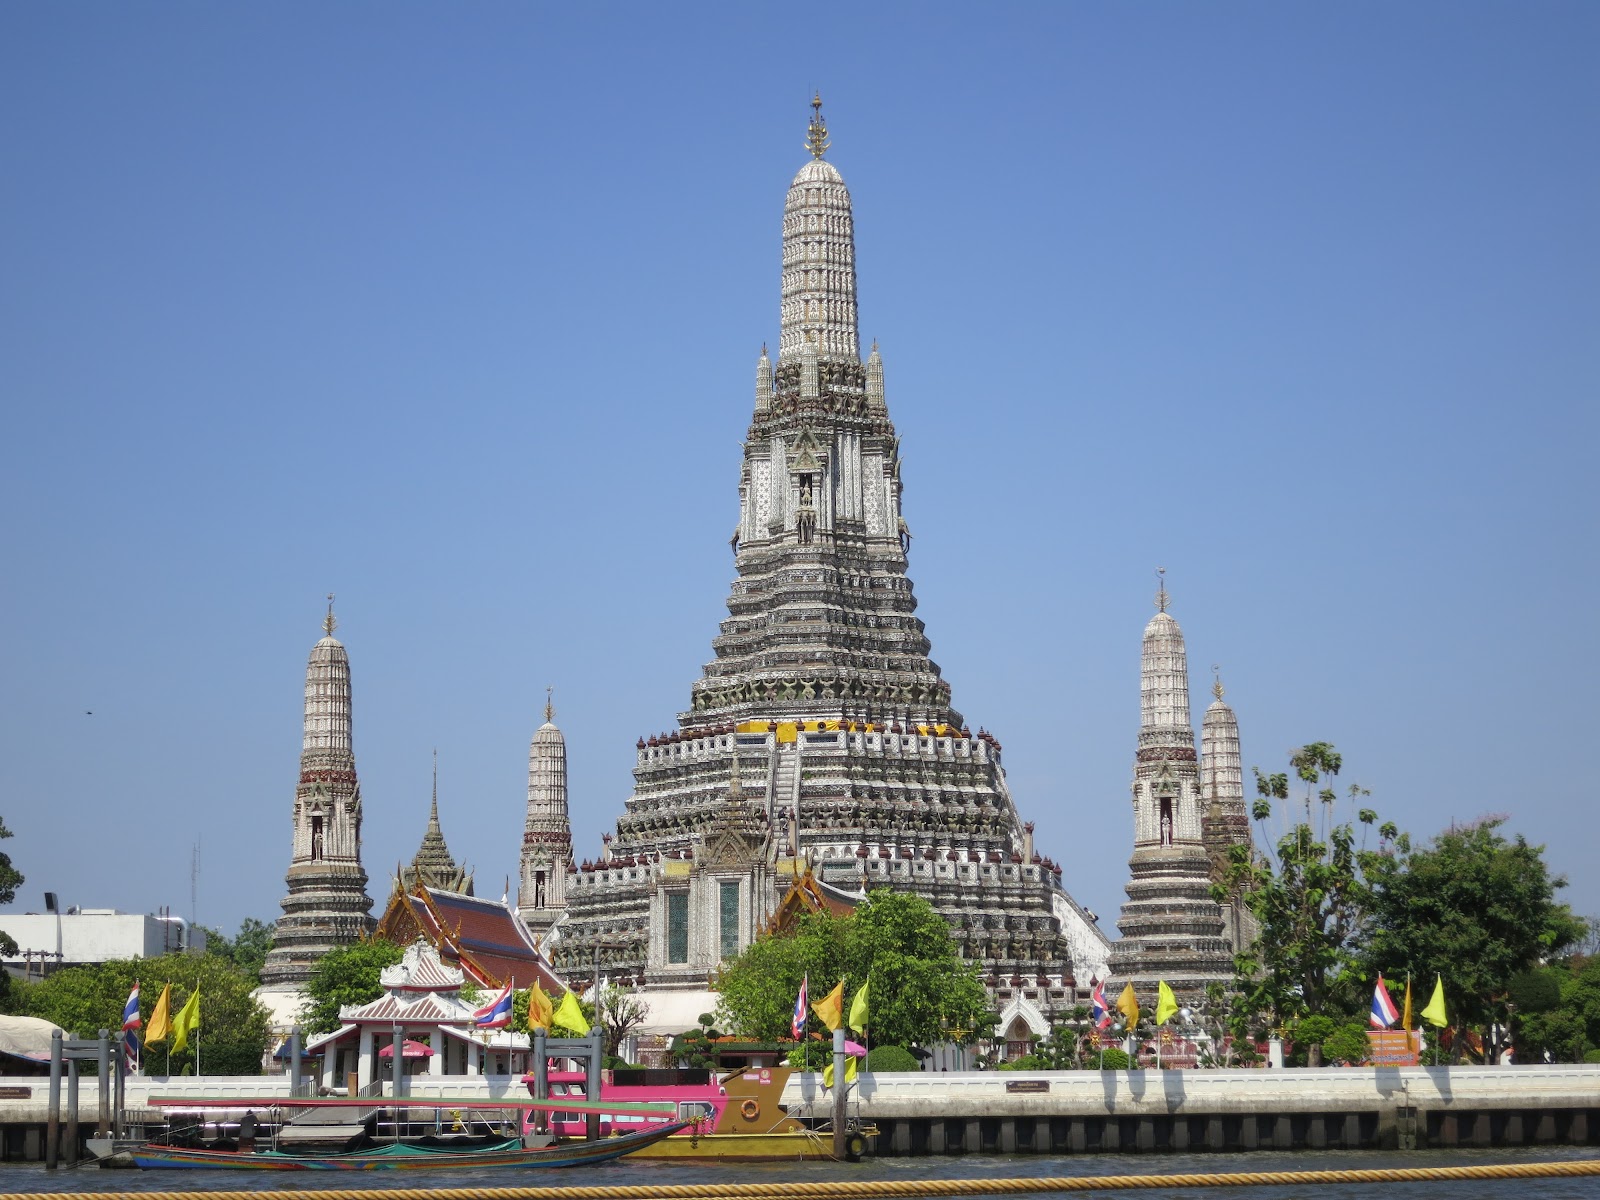 Wisata Wat Arun Temple Bangkok 2 Hari 1 Malam